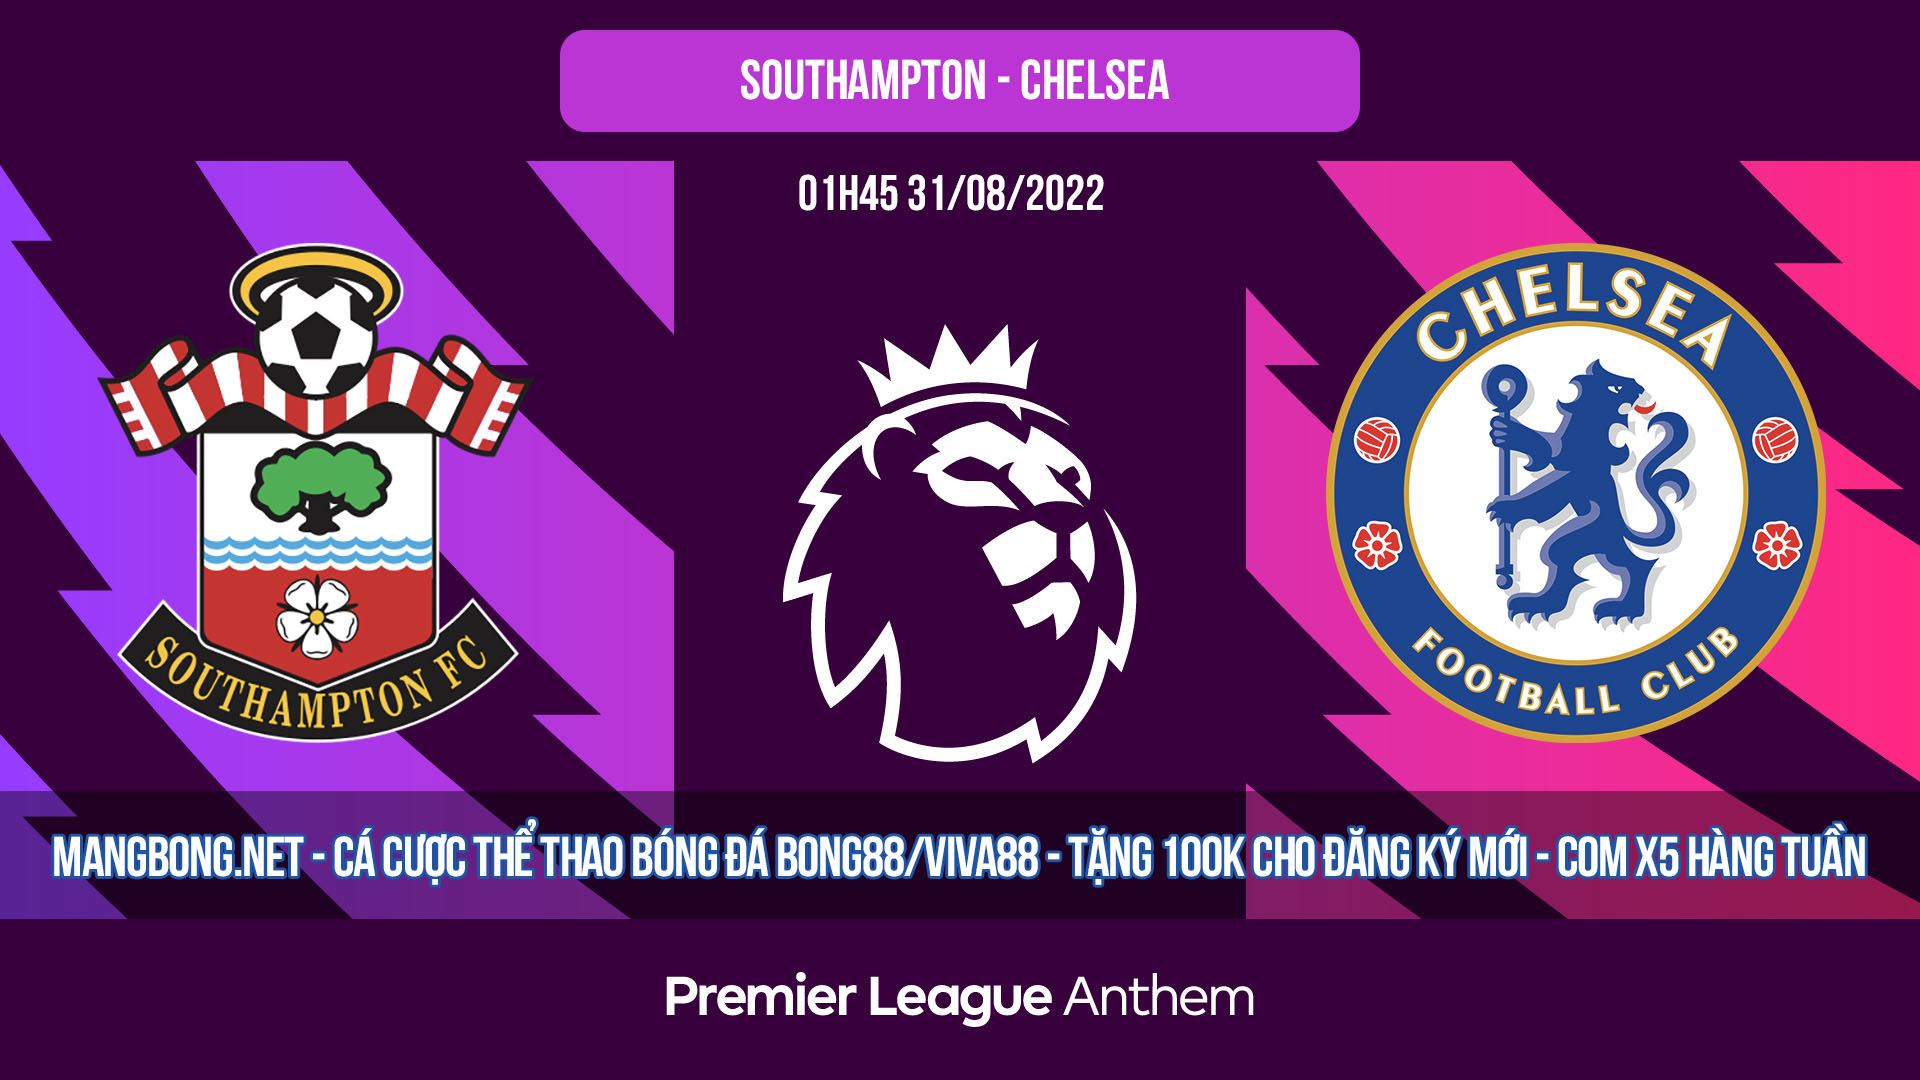 Soi kèo Southampton vs Chelsea – 01h45 31/08/2022